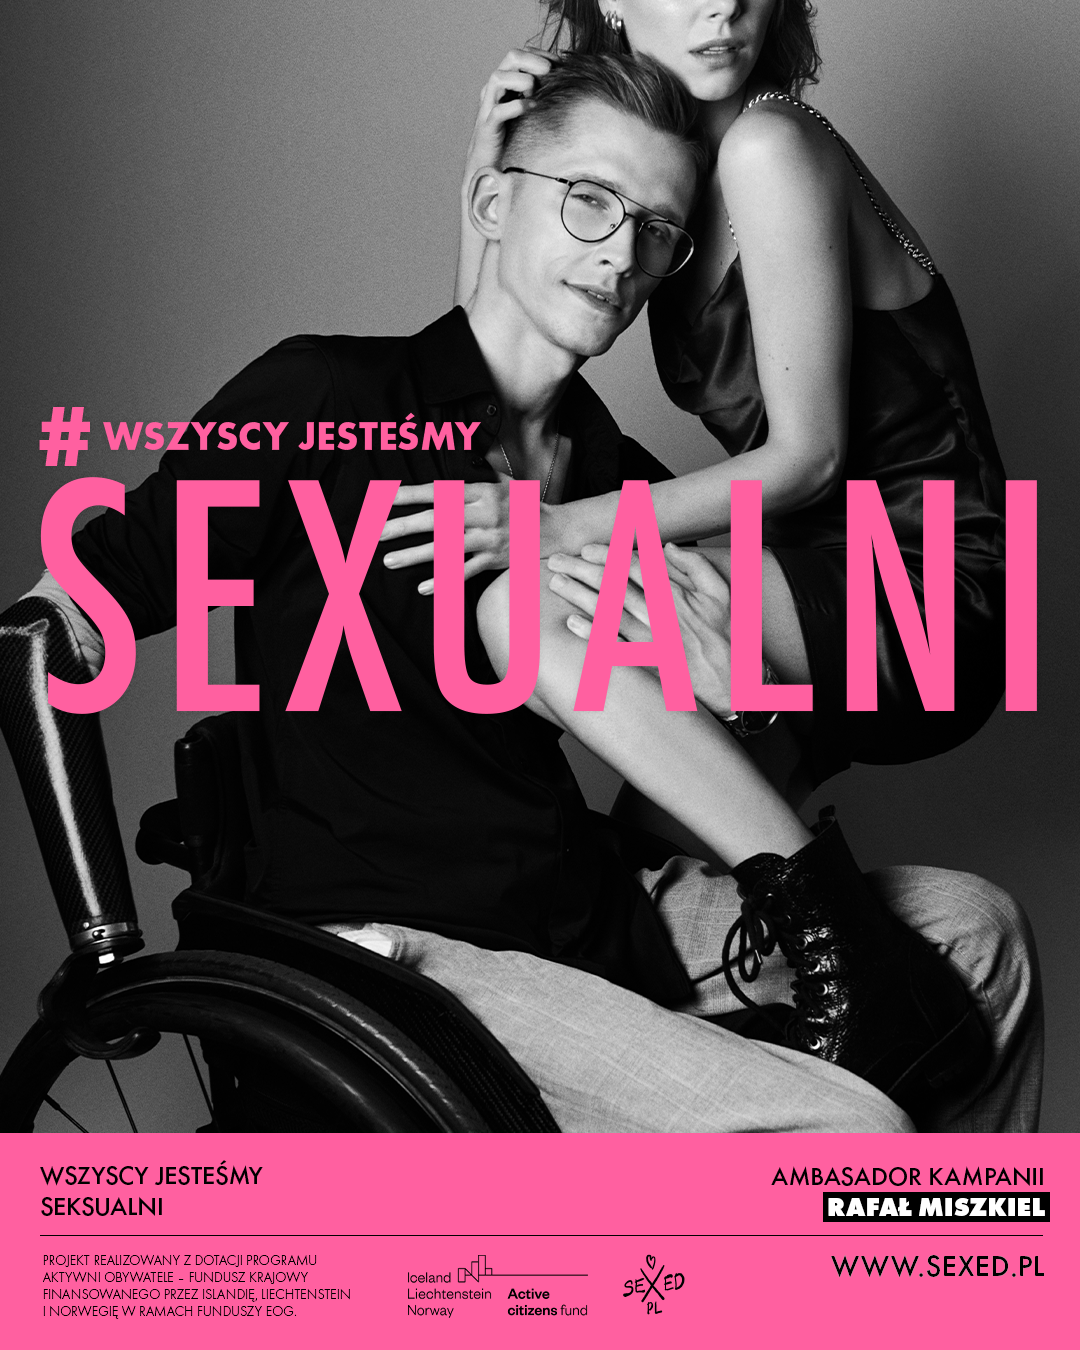 Wszyscy jesteśmy seksualni: Kampania #SEXEDPL